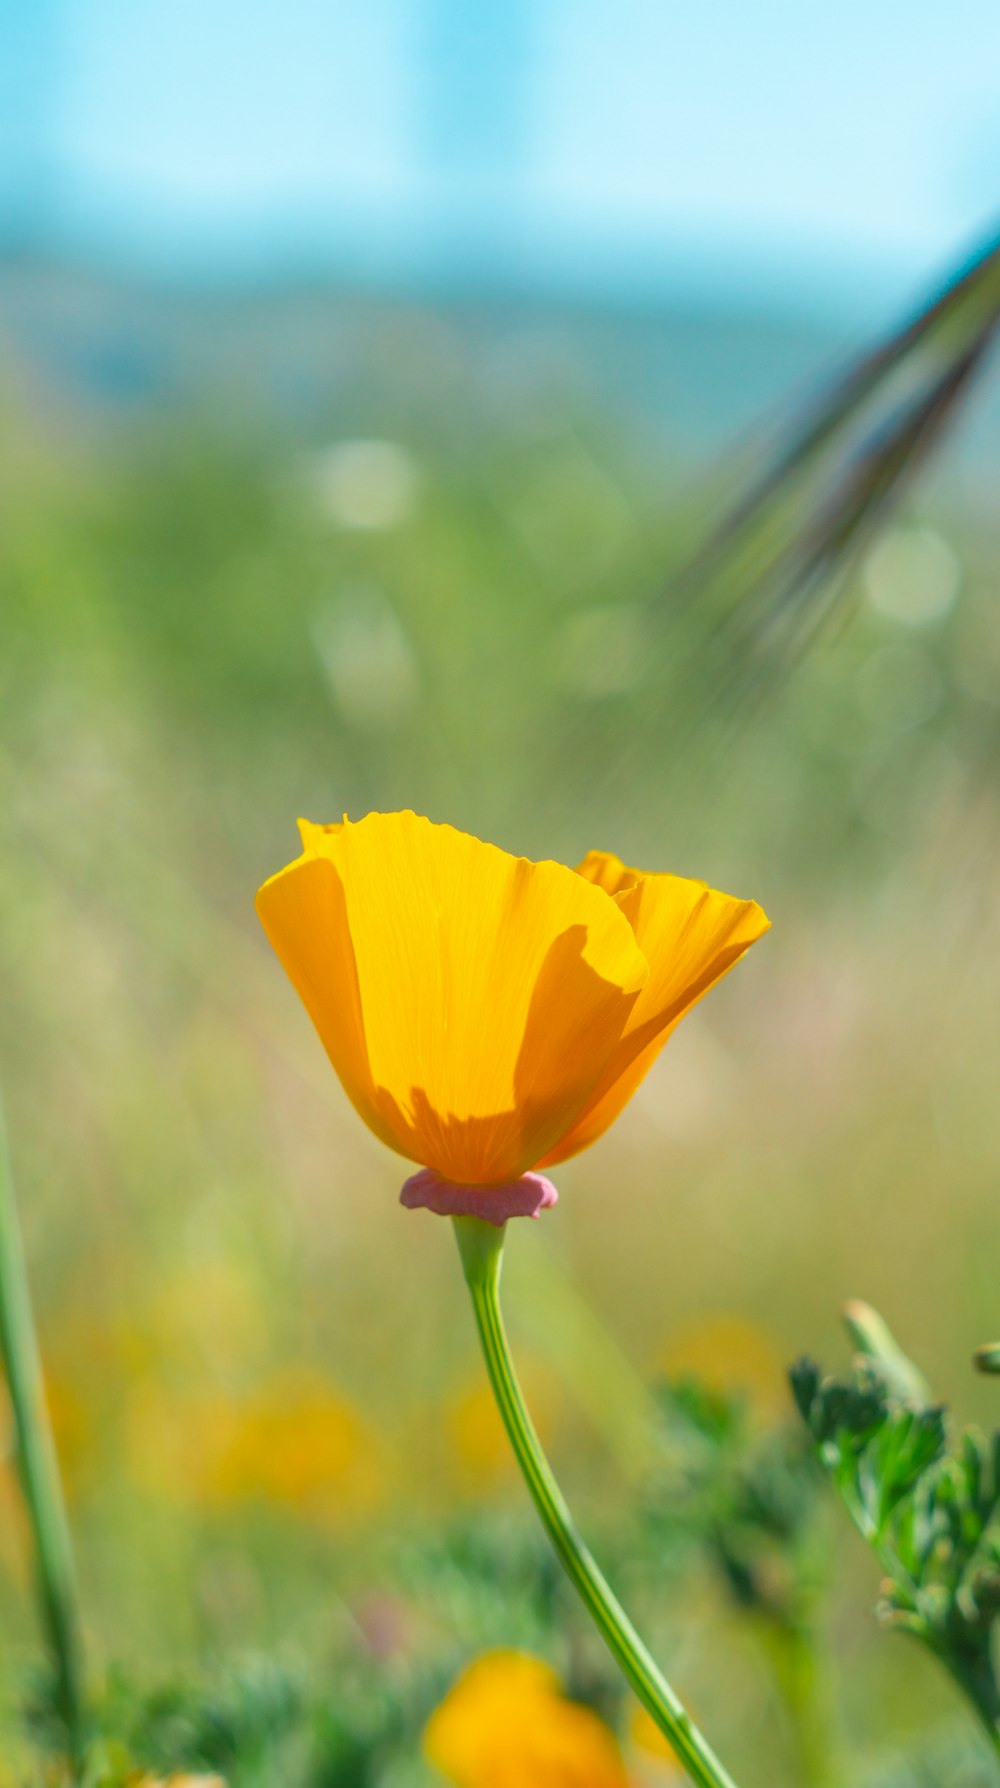 a single yellow flower in a field of flowers